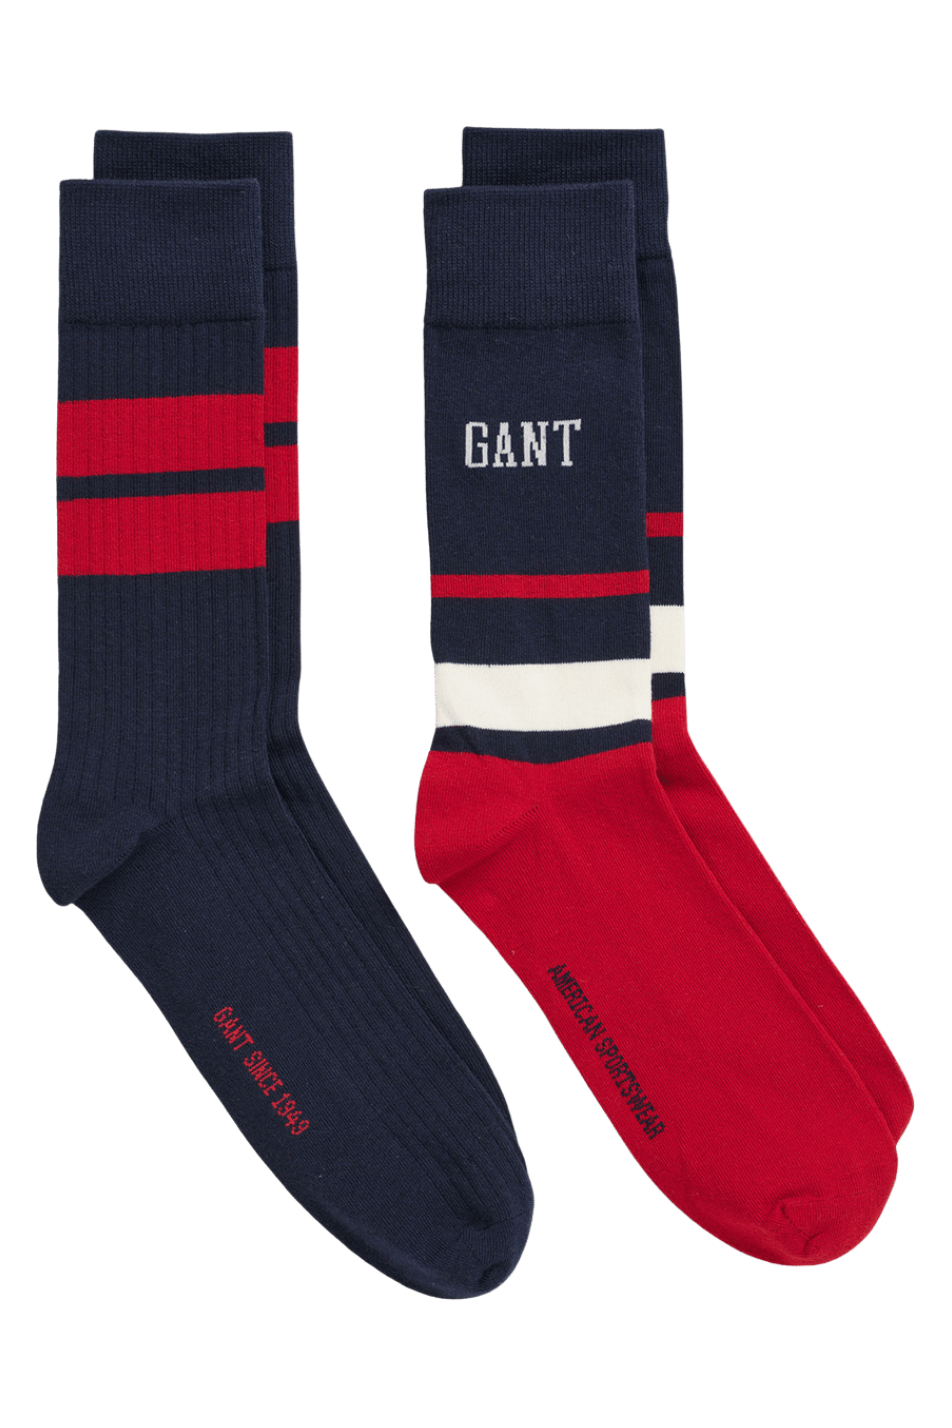 Gant 2 Pack Men's Sock